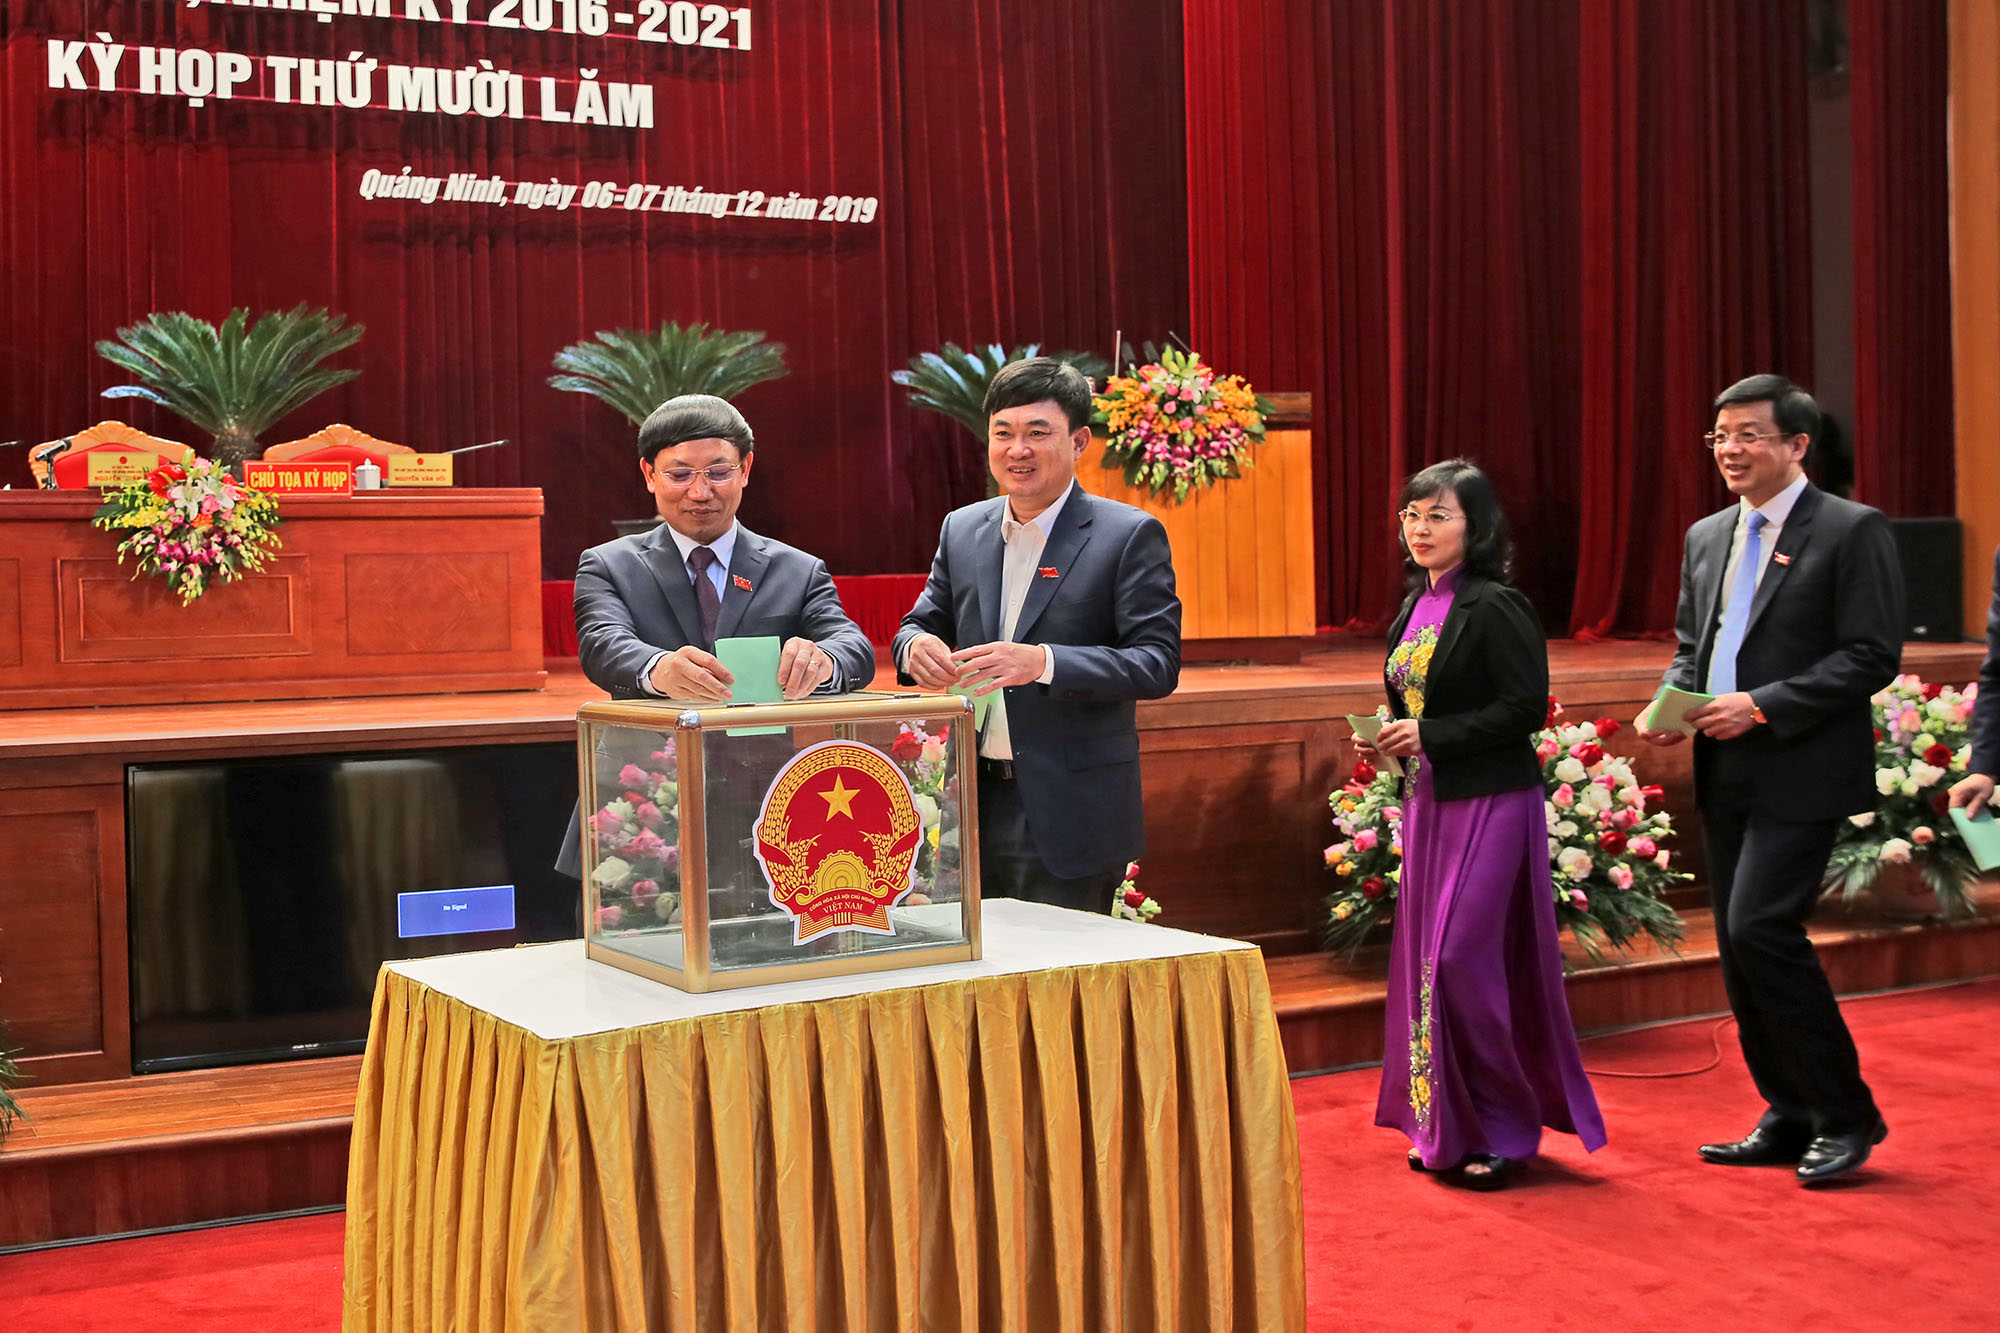 Các đại biểu thực hiện bầu cử bổ sung Ủy viên UBND tỉnh đối với ông Hoàng Bá Nam, giám đốc sở Khoa học và Công nghệ.